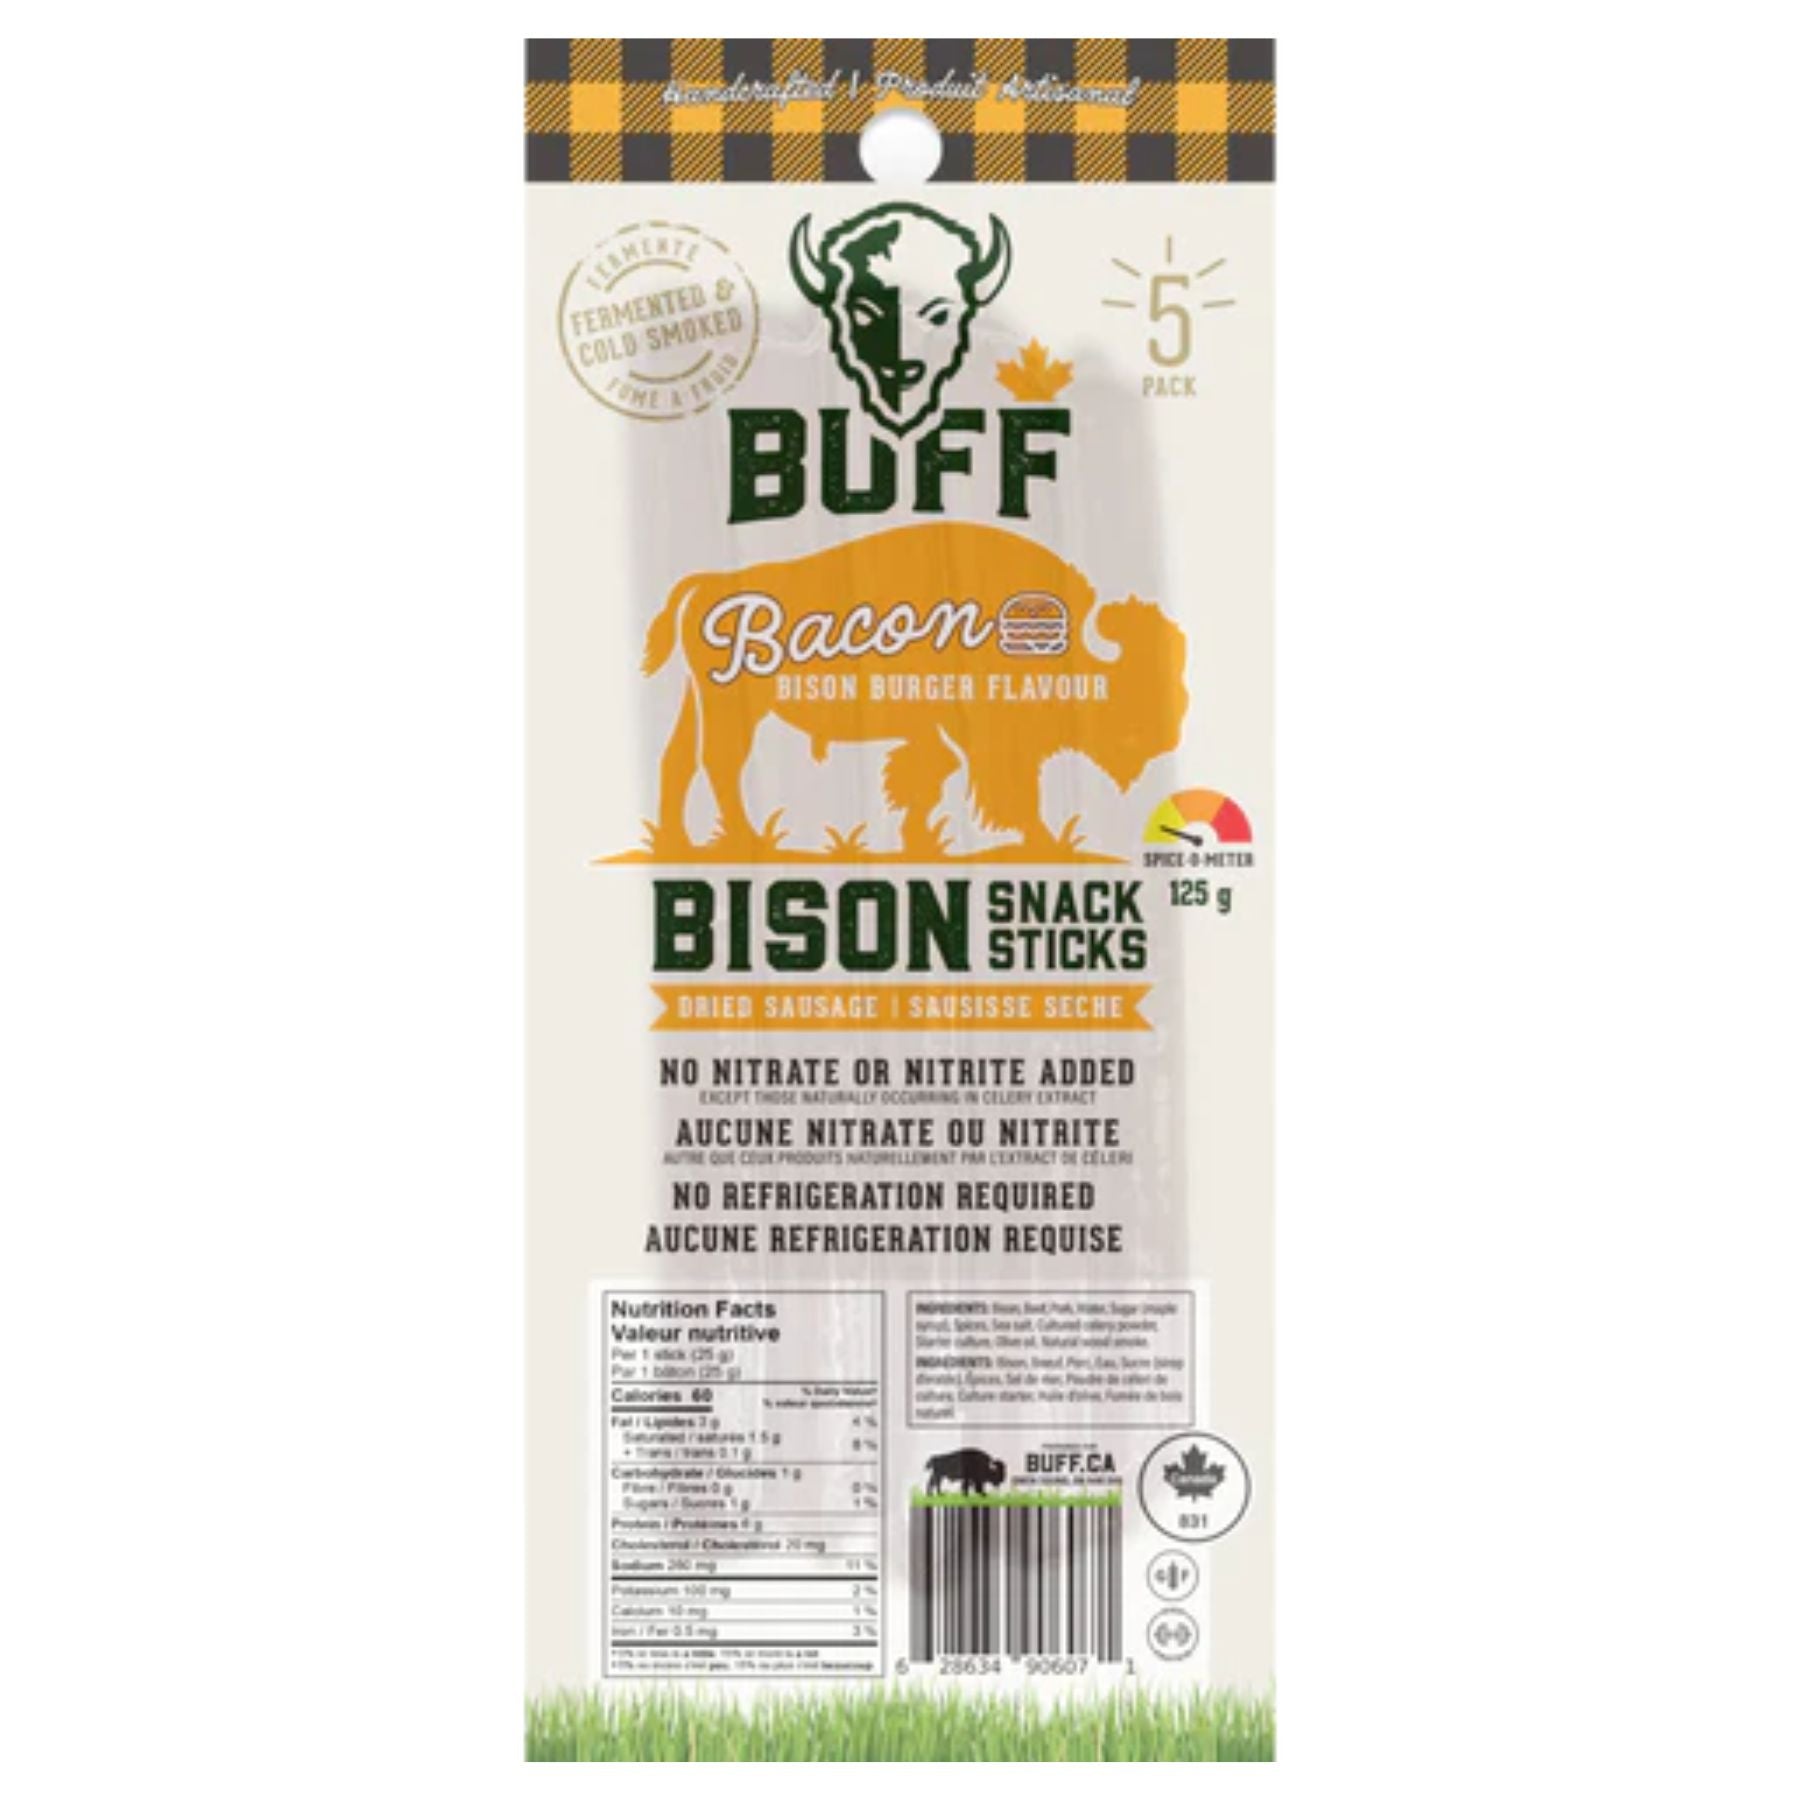 BUFF Bison Snack Sticks - Bison Bacon Burger 5 Pack (120g)